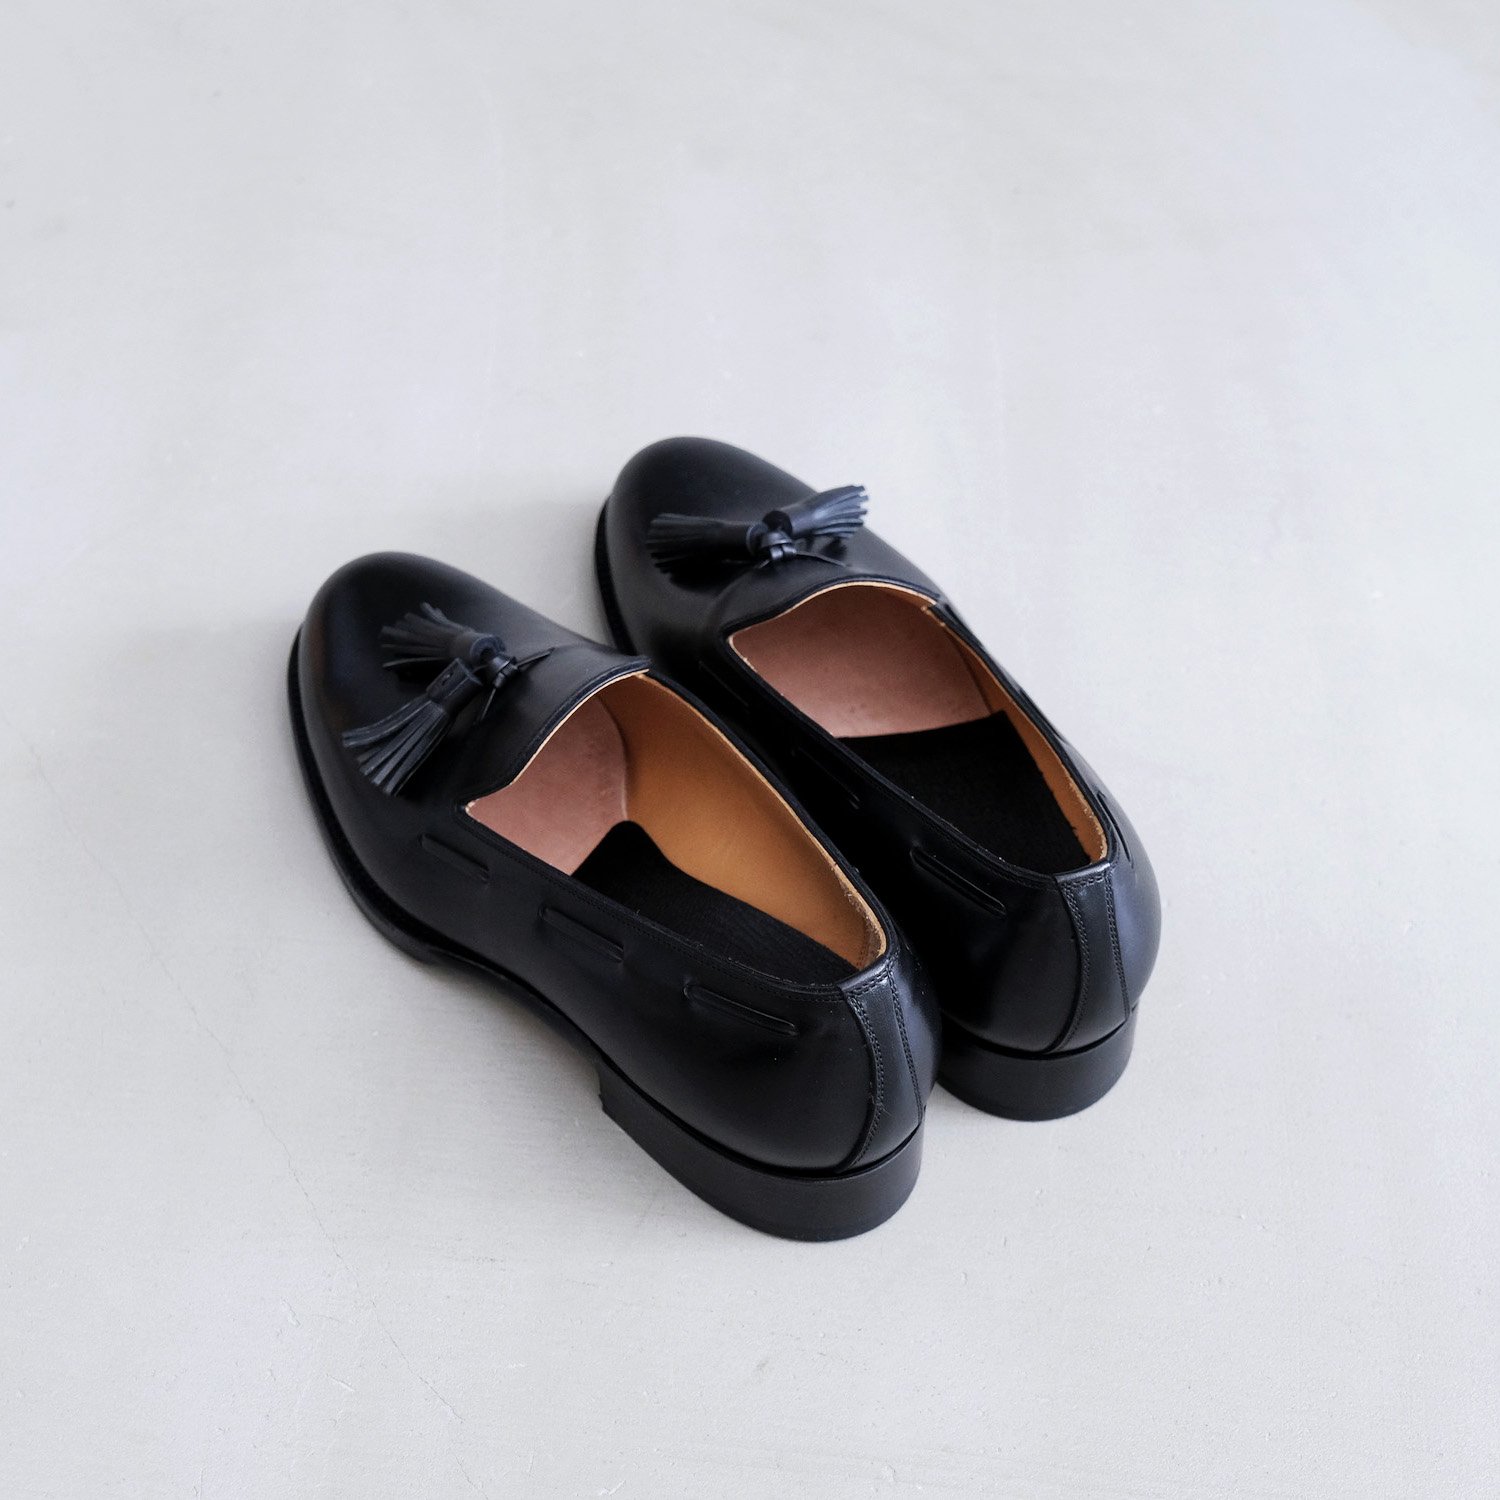 fm-118 / Tassel Loafer Plain toe [BLACK/Calf] - WUNDER 大阪 セレクトショップ 大阪梅田中崎町  オンラインストア 正規取扱い 通販可能